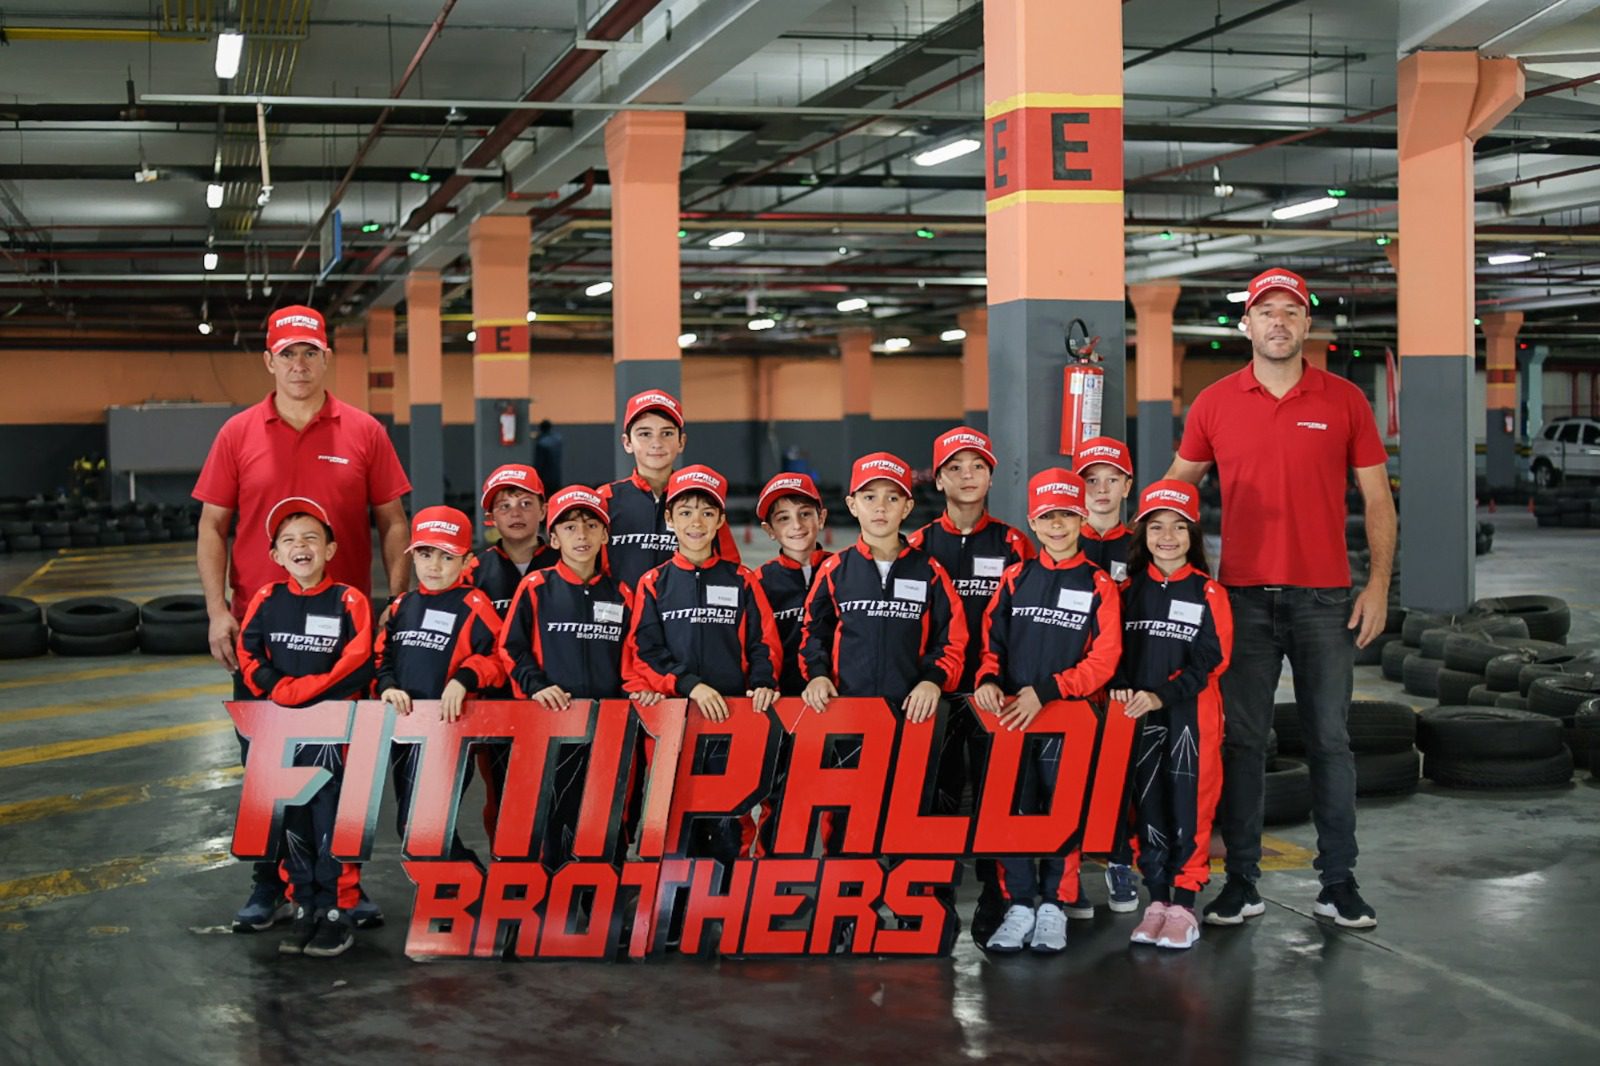 Escola de pilotagem Fittipaldi Brothers terá novo curso para